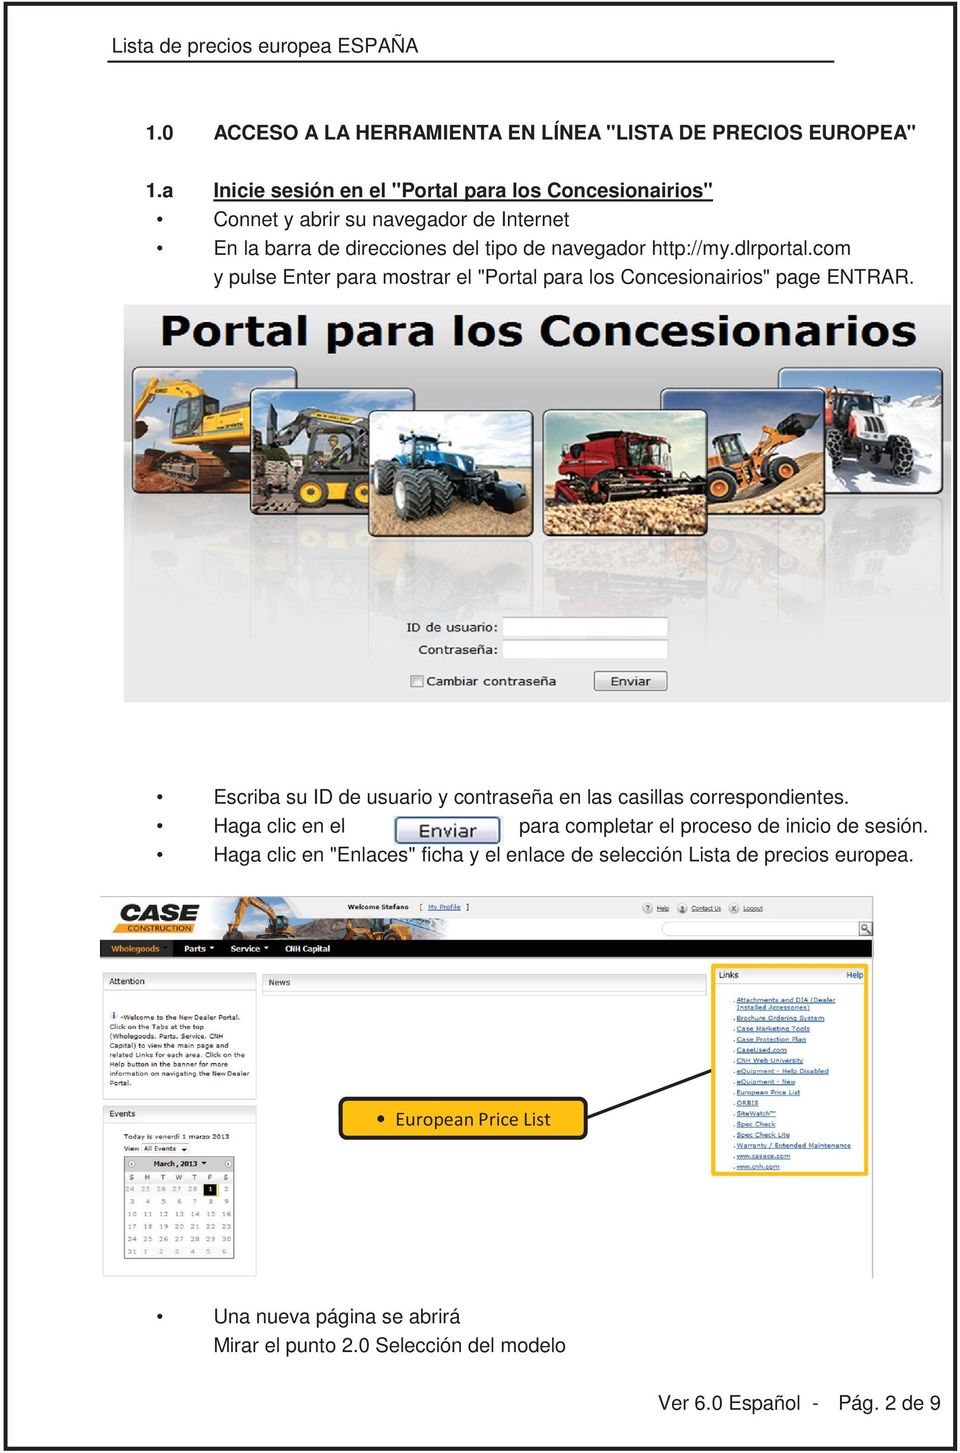 dlrportal.com y pulse Enter para mostrar el "Portal para los Concesionairios" page ENTRAR.